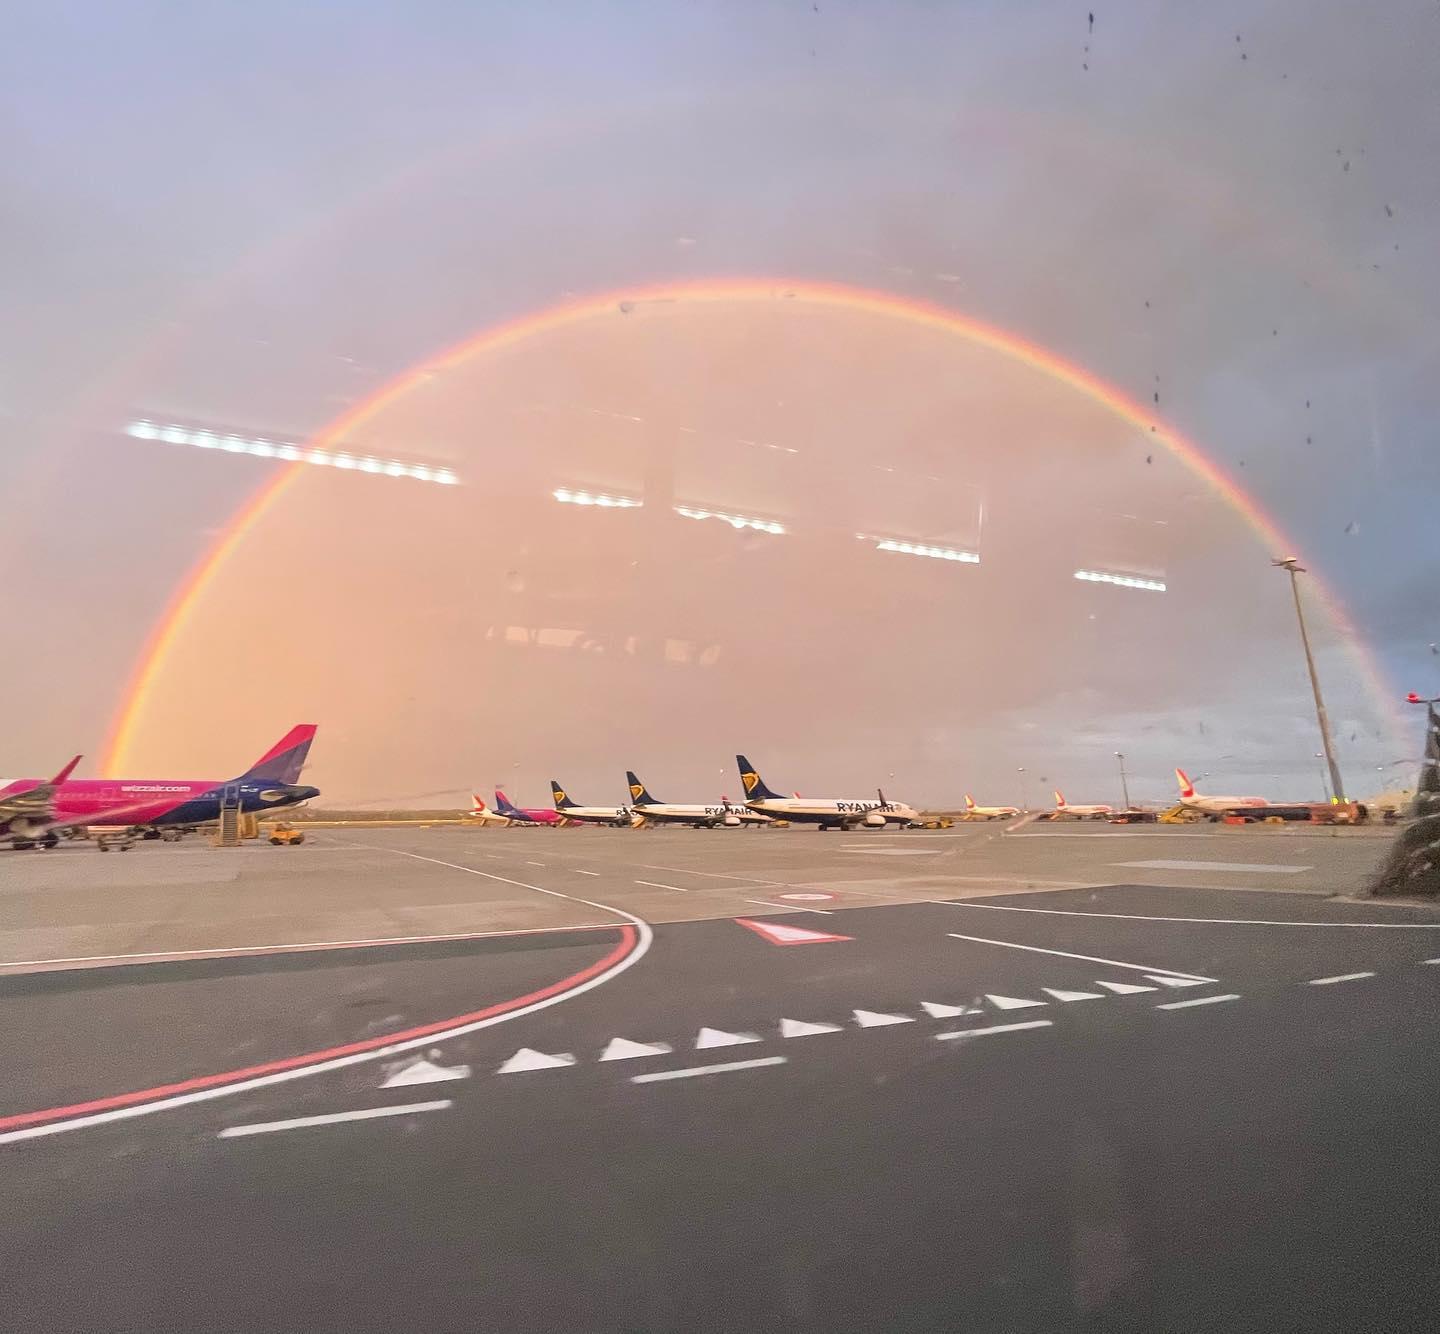 Dieser Urlaub kann nur bunt und strahlend werden! 🌈
#flughafen #airport #regenbogen #rainbow #withmyfriends